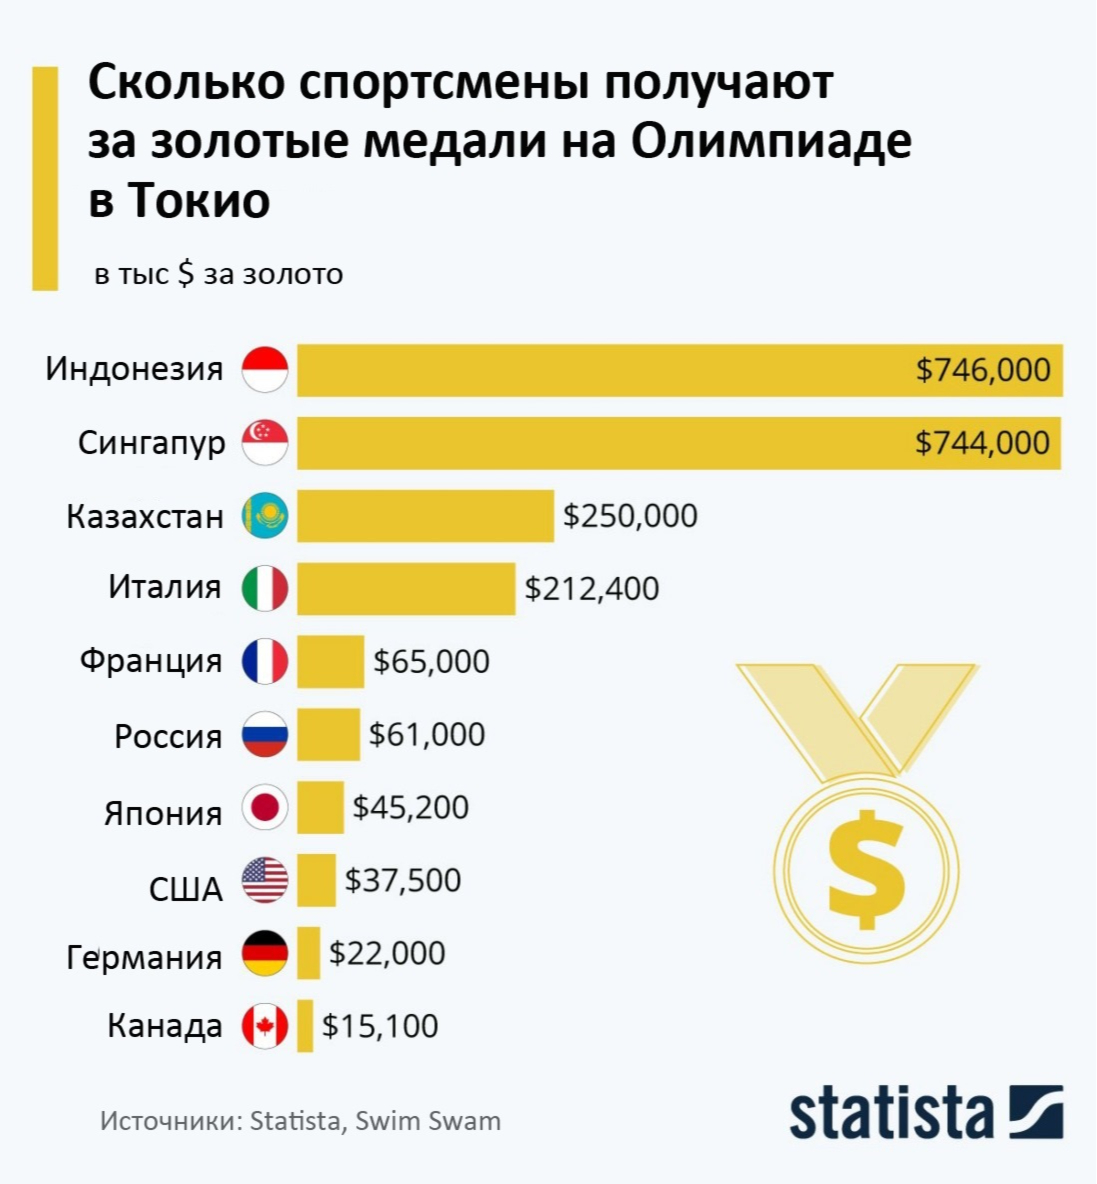 Насколько цена. Количество спортсменов. Деньги за золотую медаль на Олимпиаде. Сколько получают спортсмены за золотую медаль на Олимпиаде. Страны по количеству Олимпийские медали по золоту.